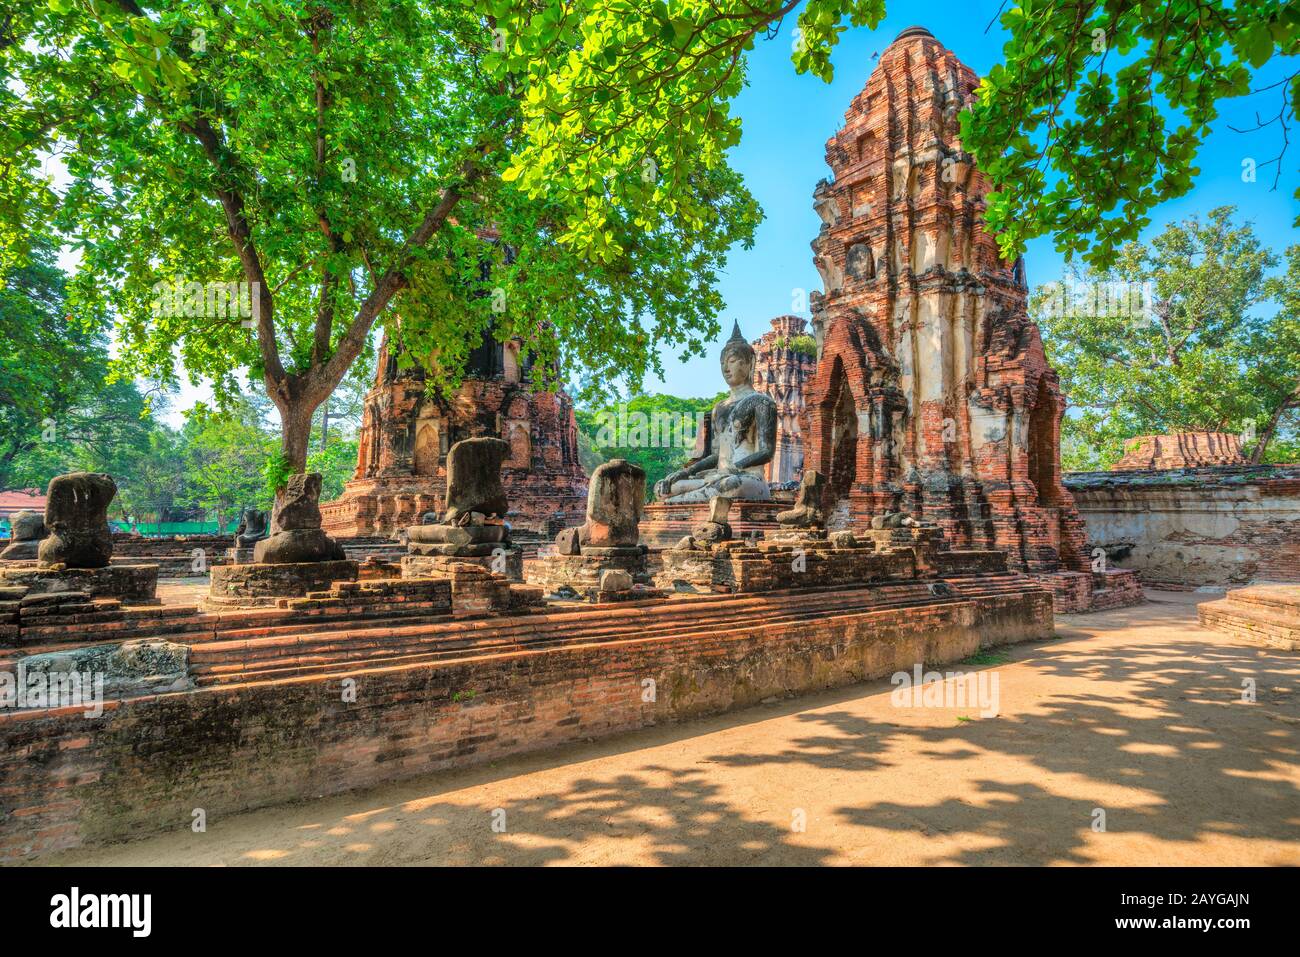 Wat Mahathat Temple, Ayutthaya.  Bangkok province, Thailand Stock Photo